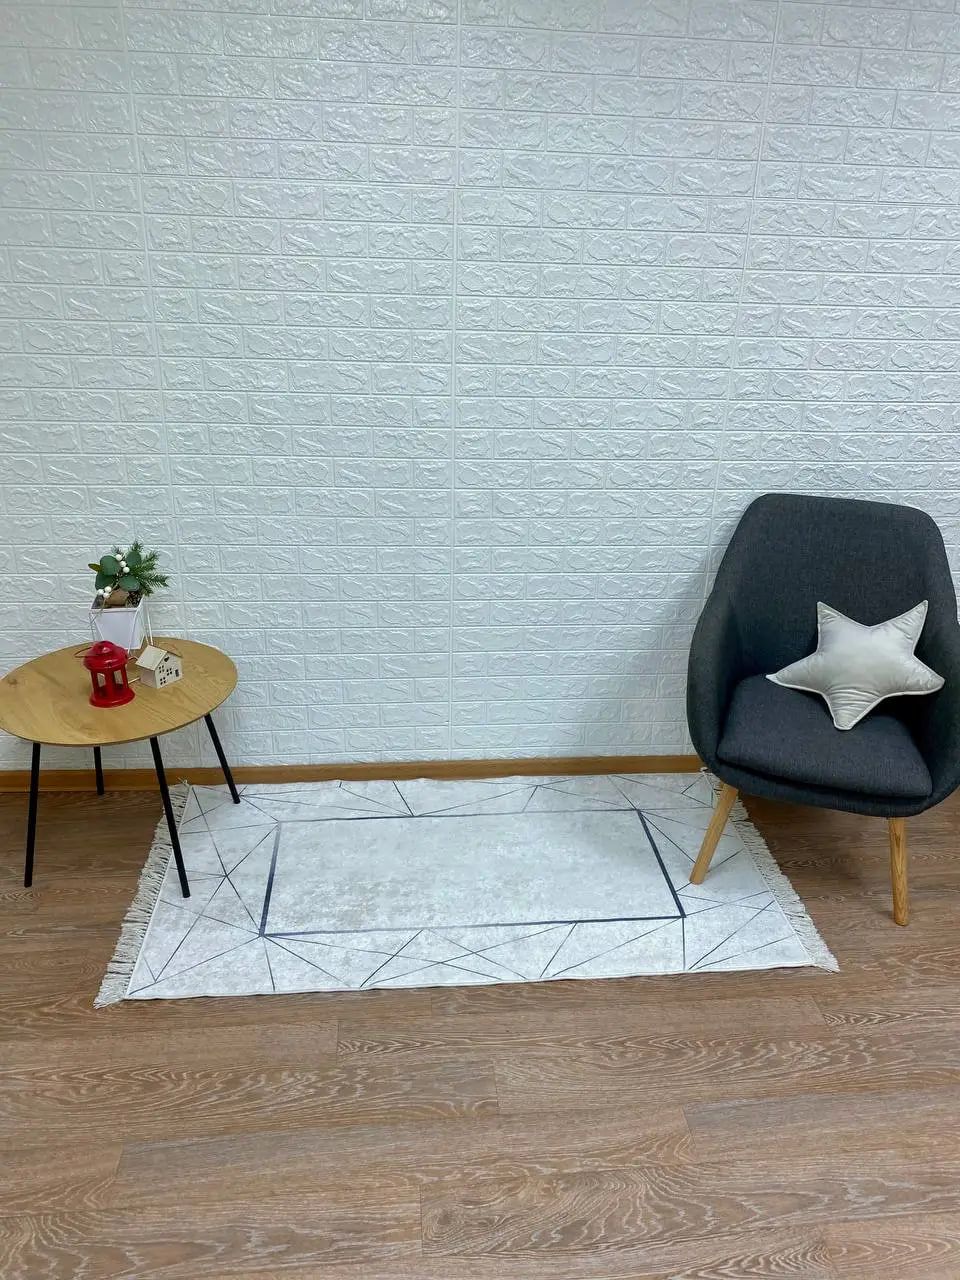 Турецький безворсовий килим "White diamond" підкладка з еко-шкіри